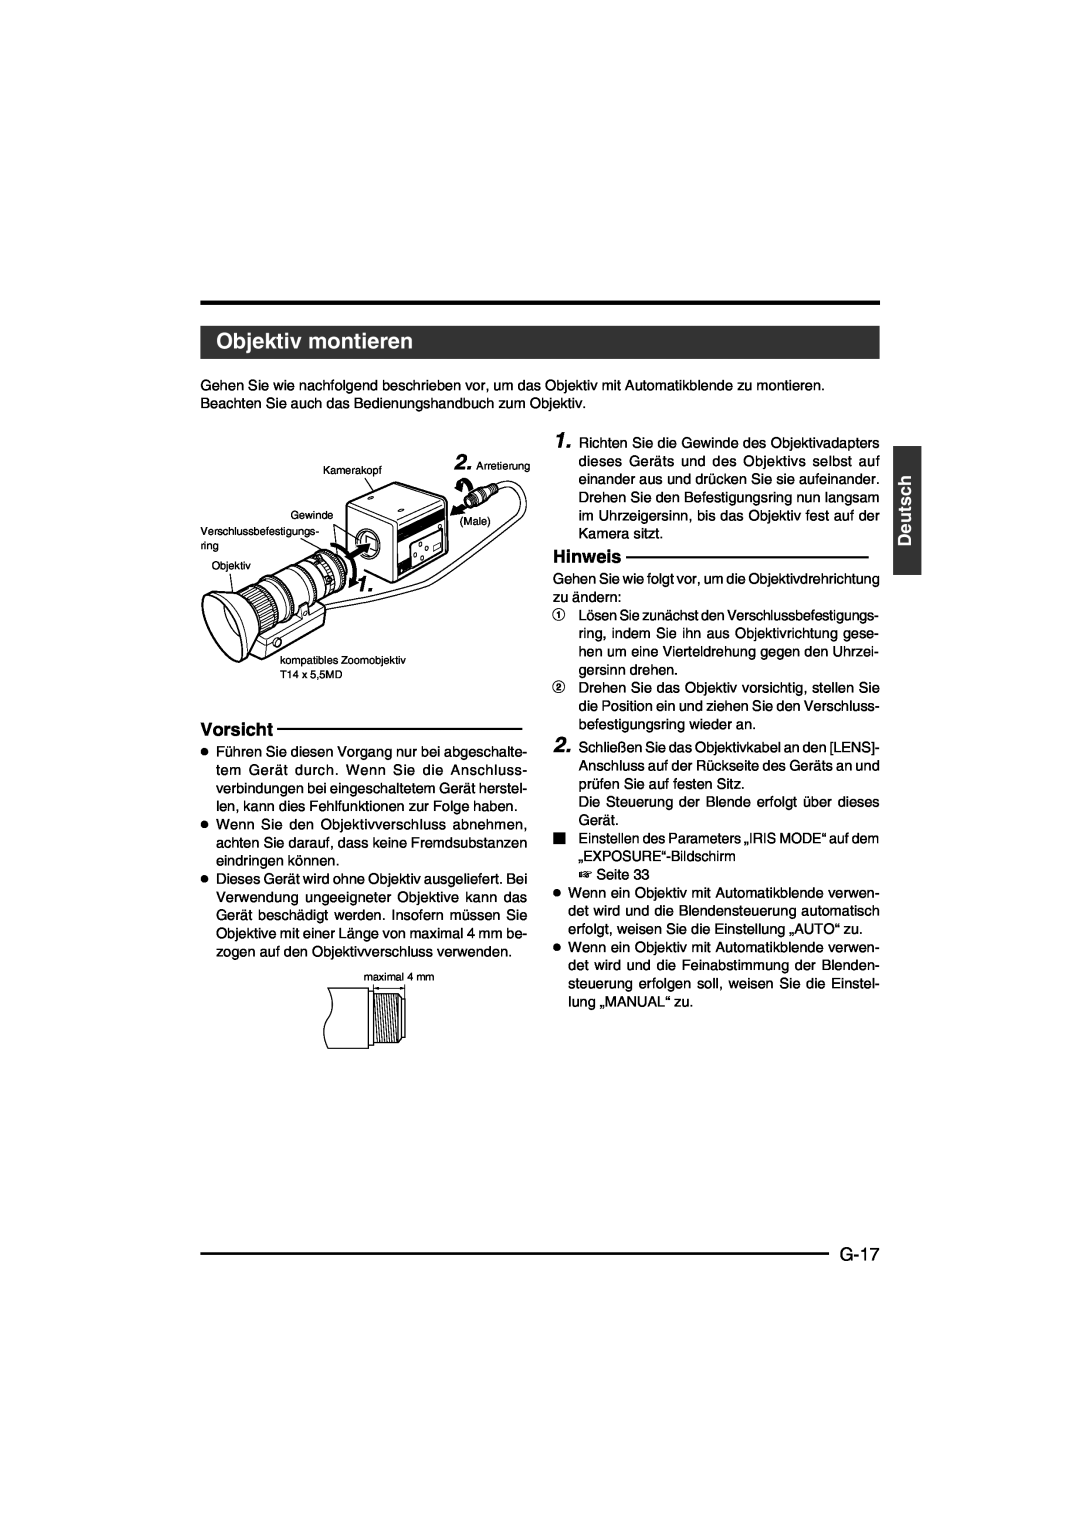 JVC KY-F550E instruction manual Objektiv montieren, G-17, Deutsch, Hinweis, Vorsicht 